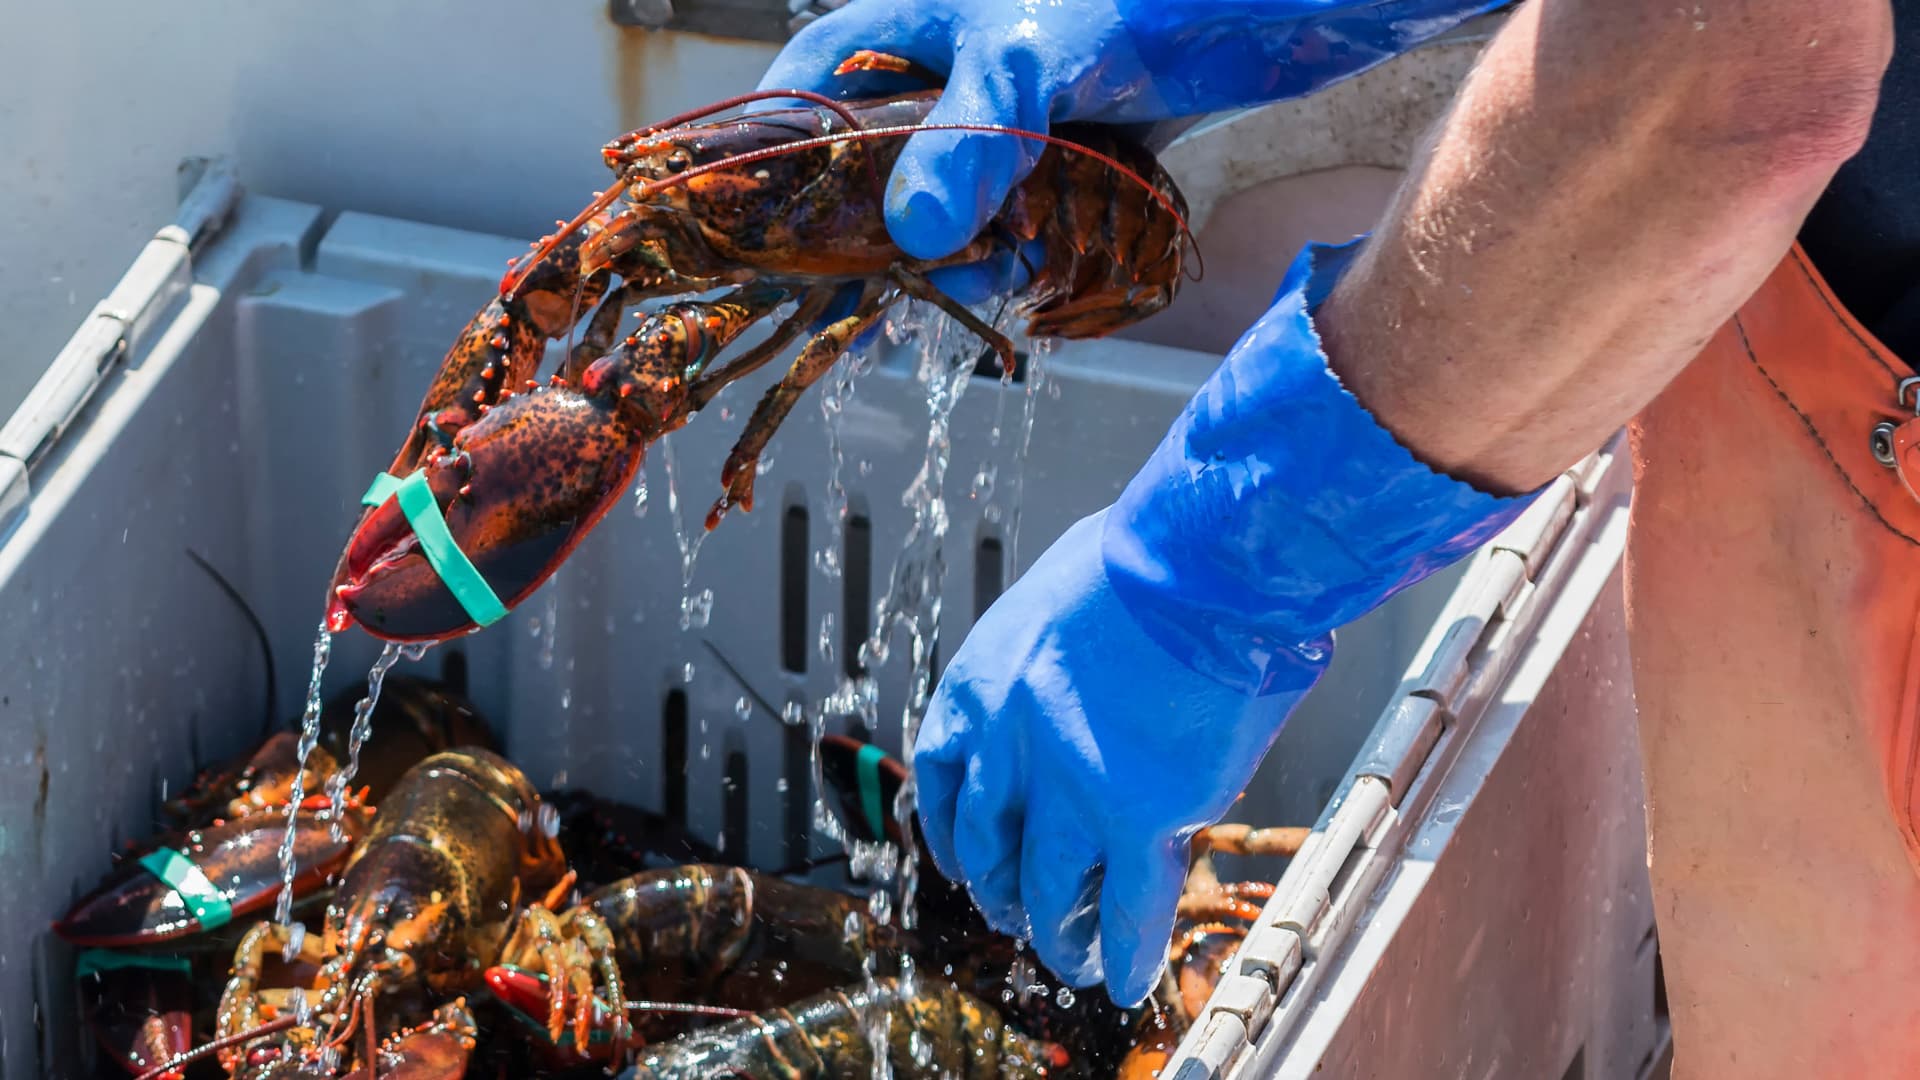 L’Association Animal Justice Savoie dénonce le traitement des homards vendus vivants. // PHOTO : Coachwood / Adobe Stock